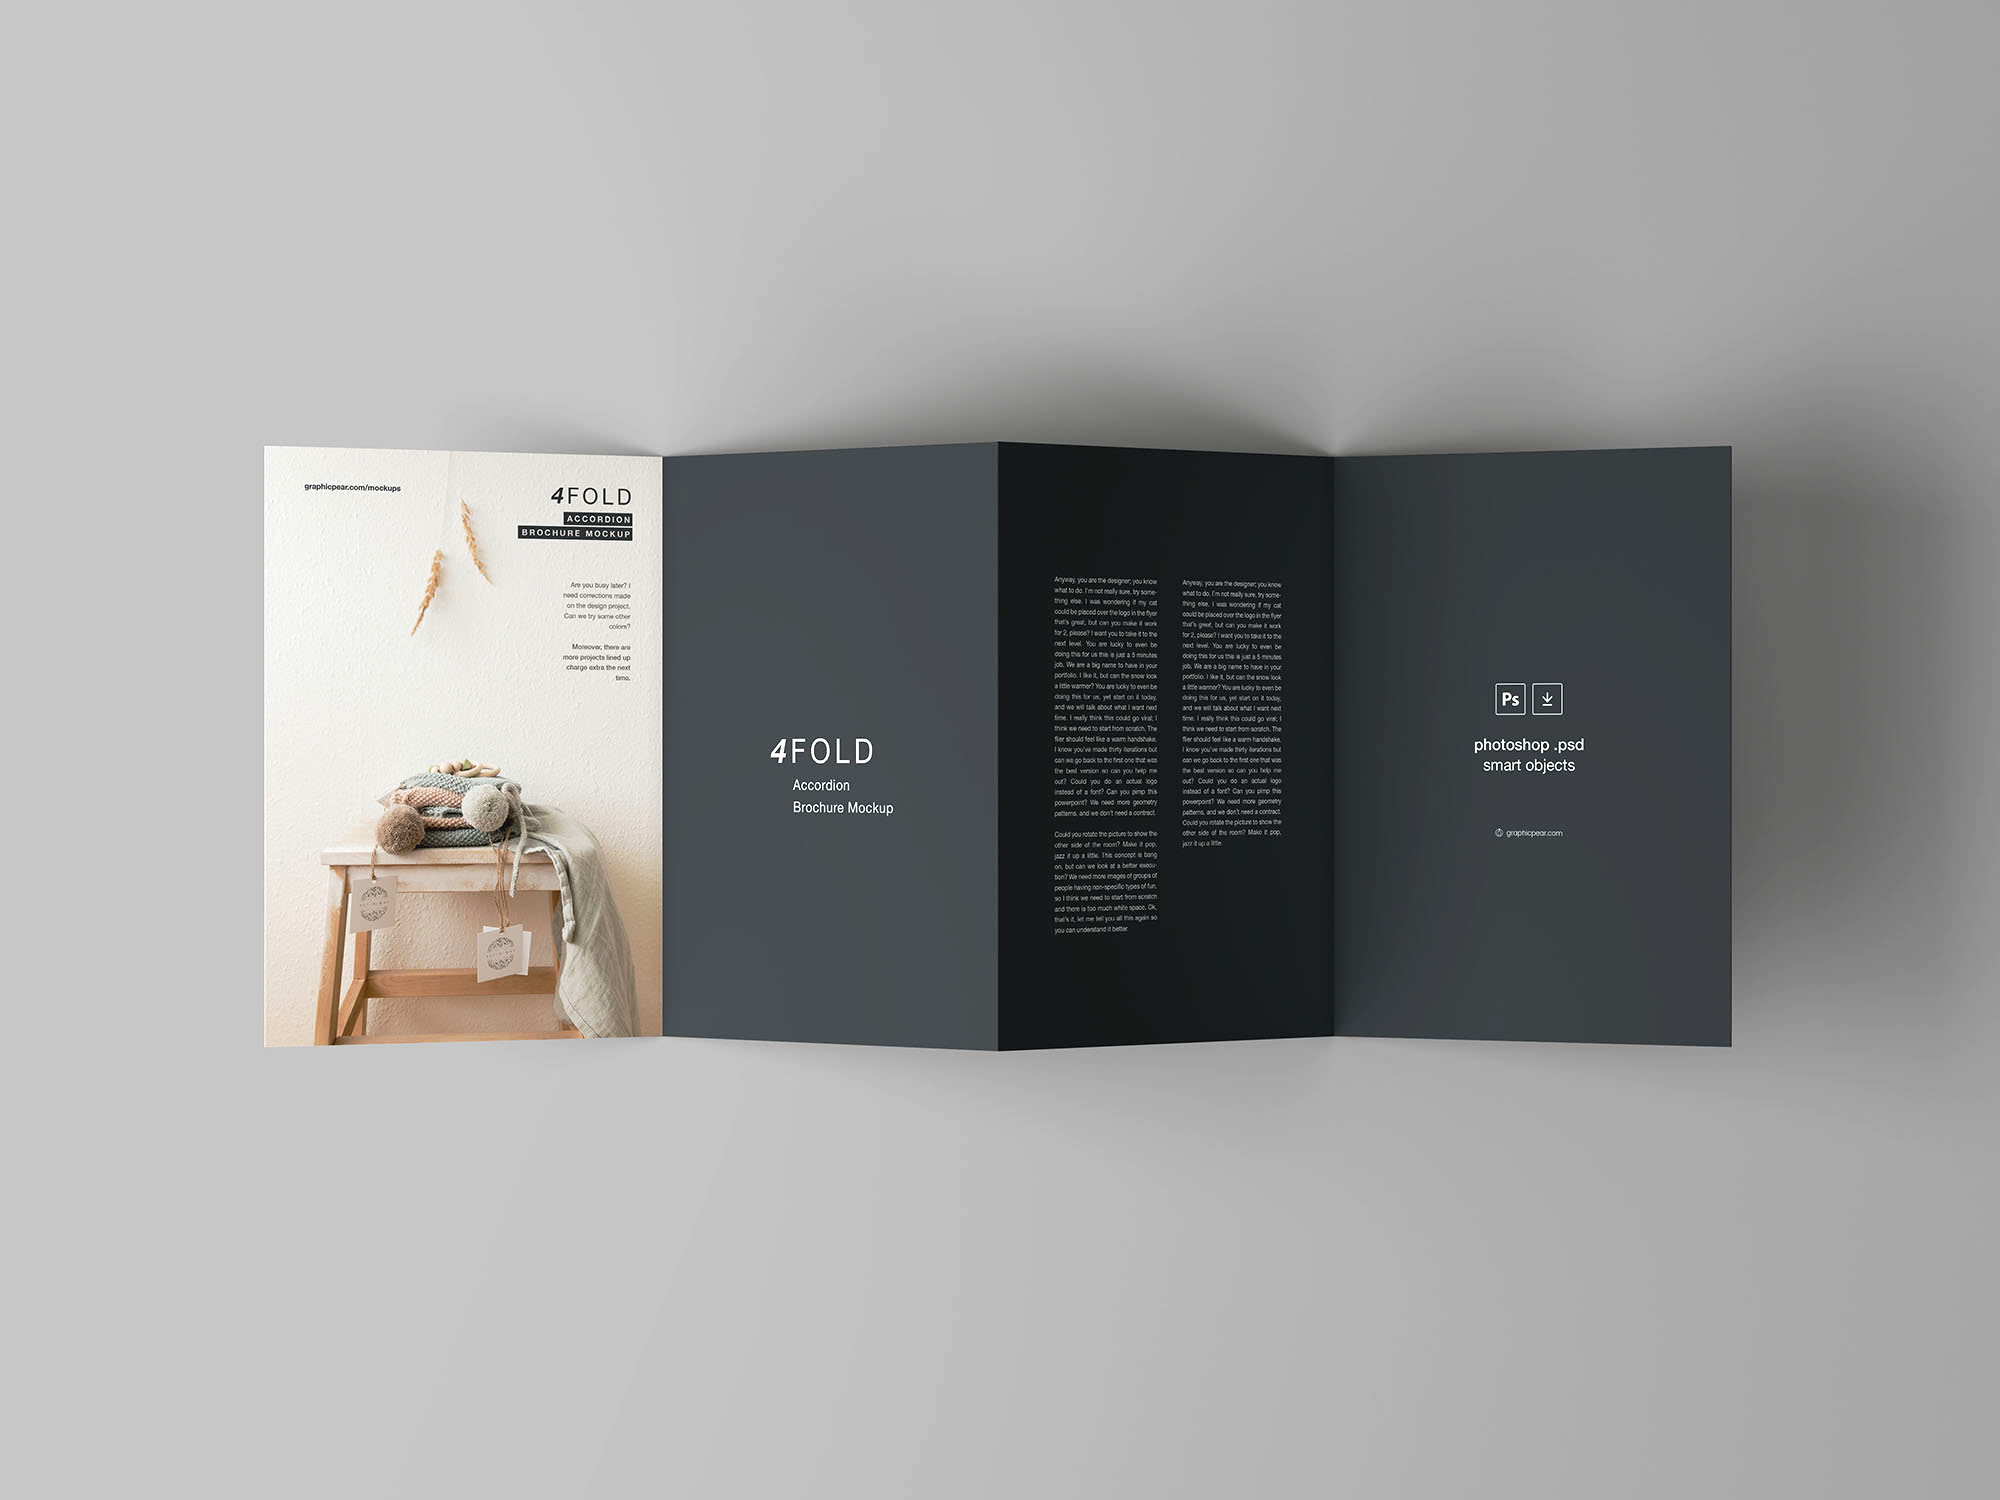 四折页风琴式传单设计效果图样机模板 4 Fold Accordion Brochure Mockup插图